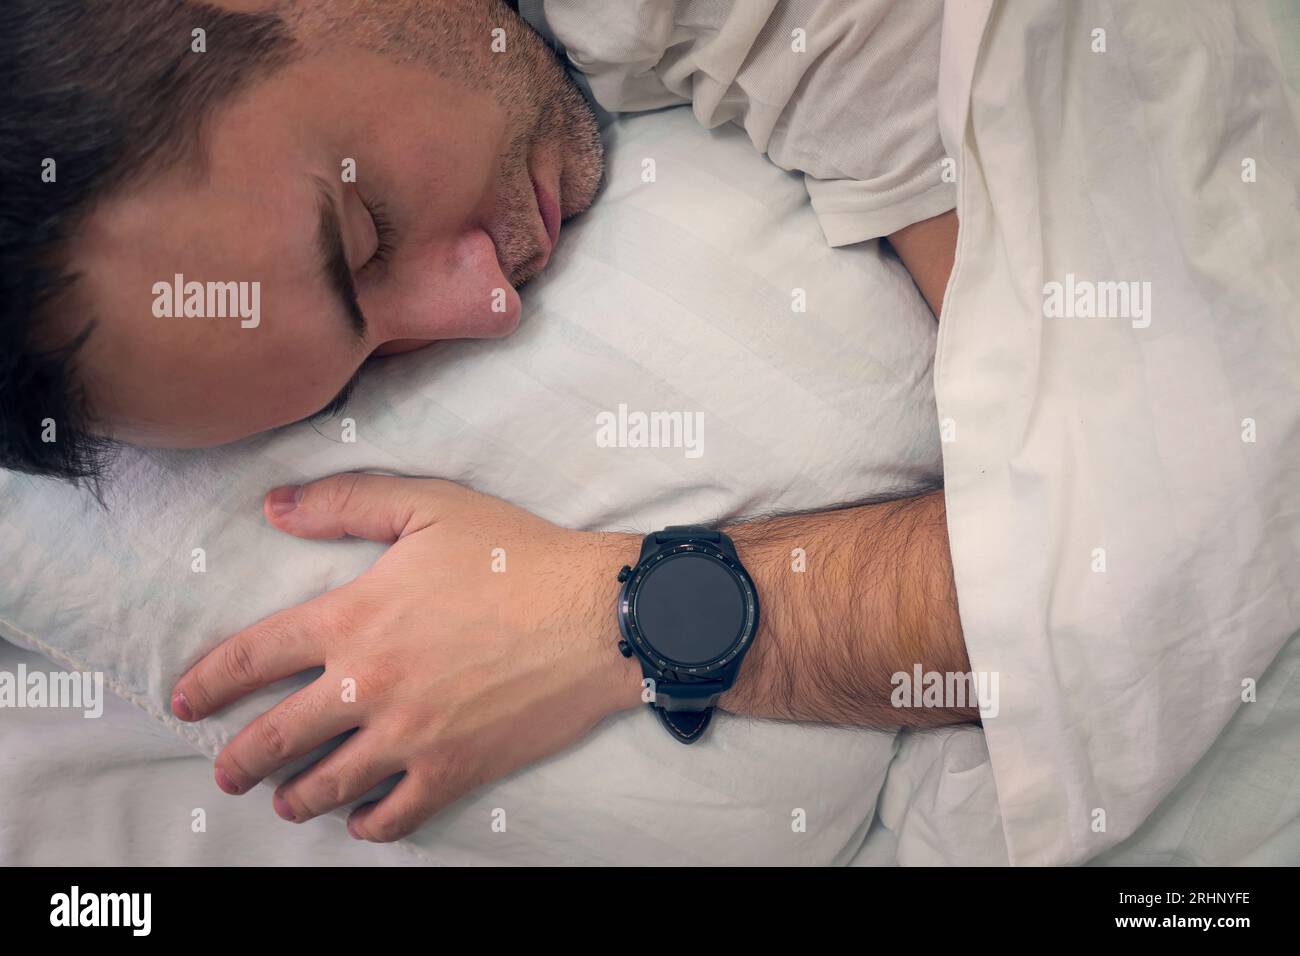 Heartbeat-Überwachung mit einem intelligenten Gadget im Traum. Der Mann schläft auf einem weißen Kissen mit einer Smartwatch am Handgelenk, um seinen Herzschlag zu überwachen. Ein leeres scr Stockfoto